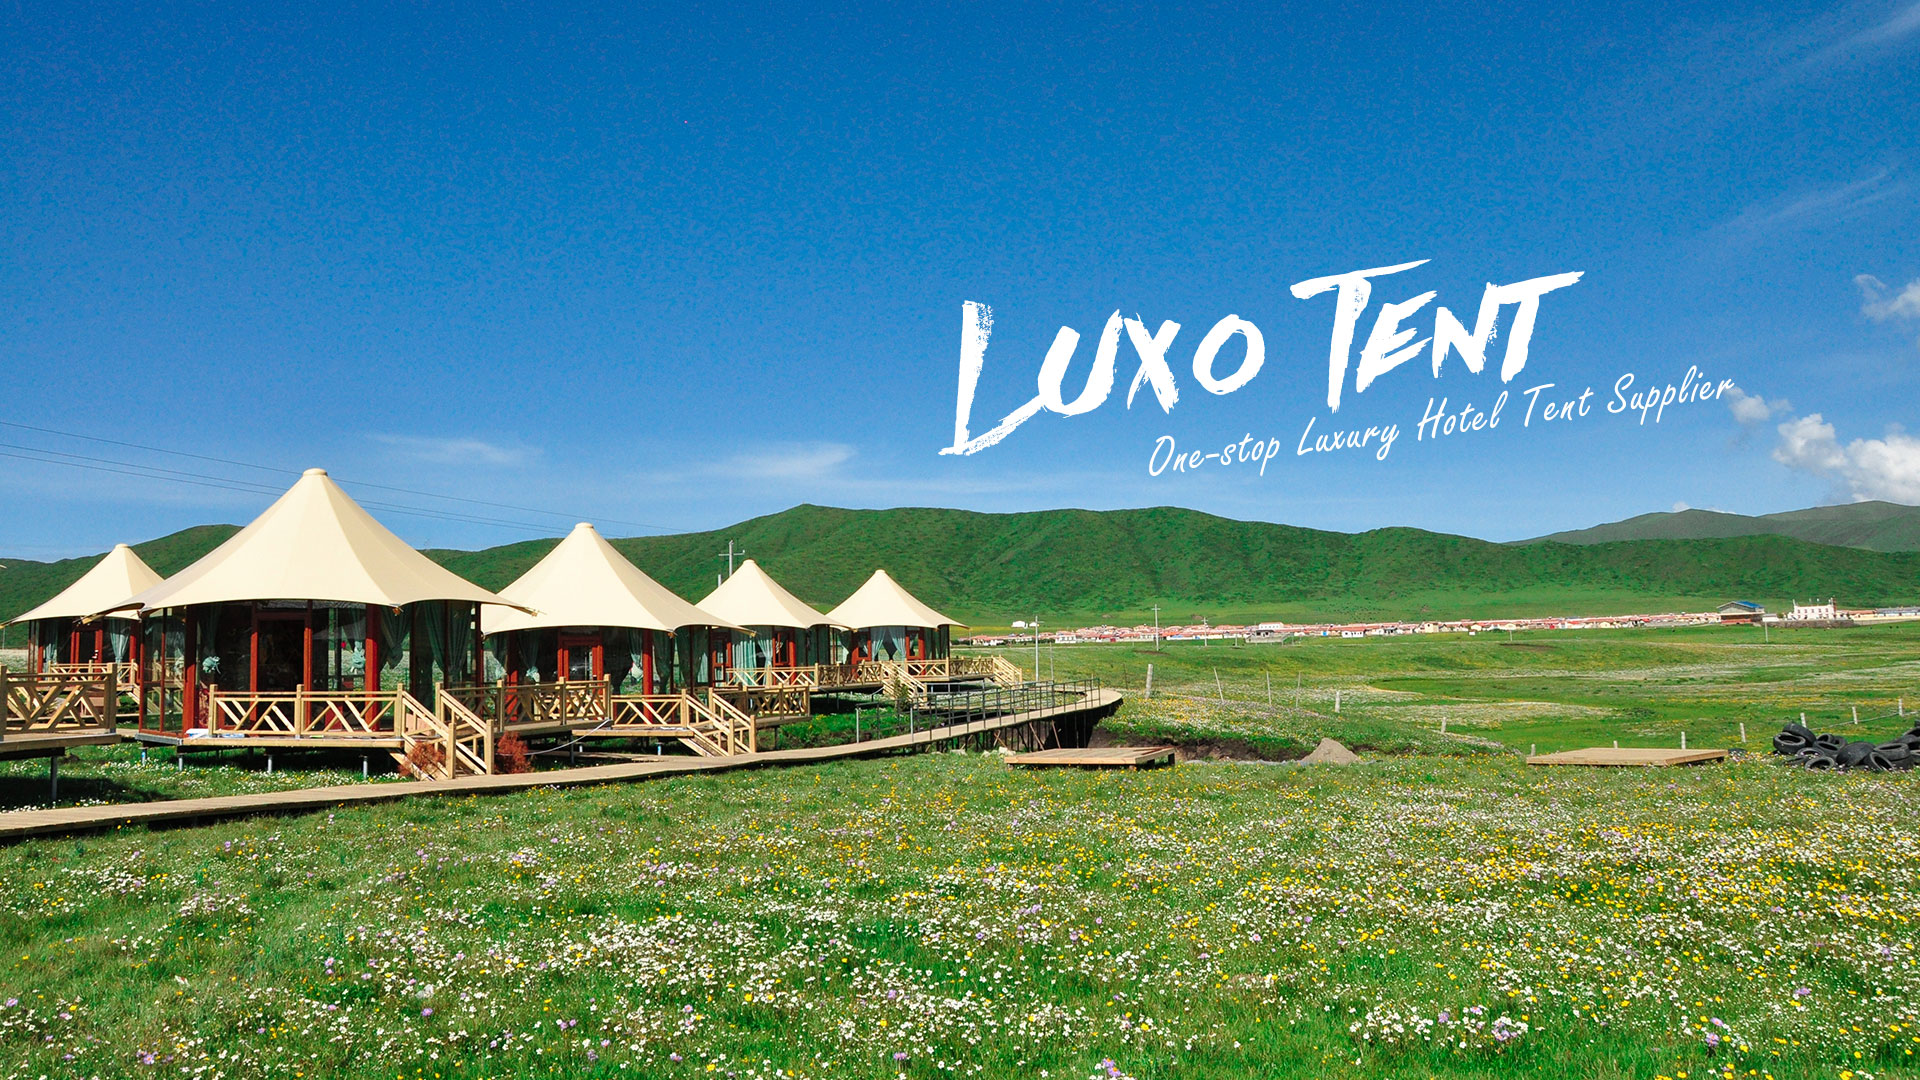 Hotel Tent, Luxury Hotel Tent, Resort Tent - LUXO TENT